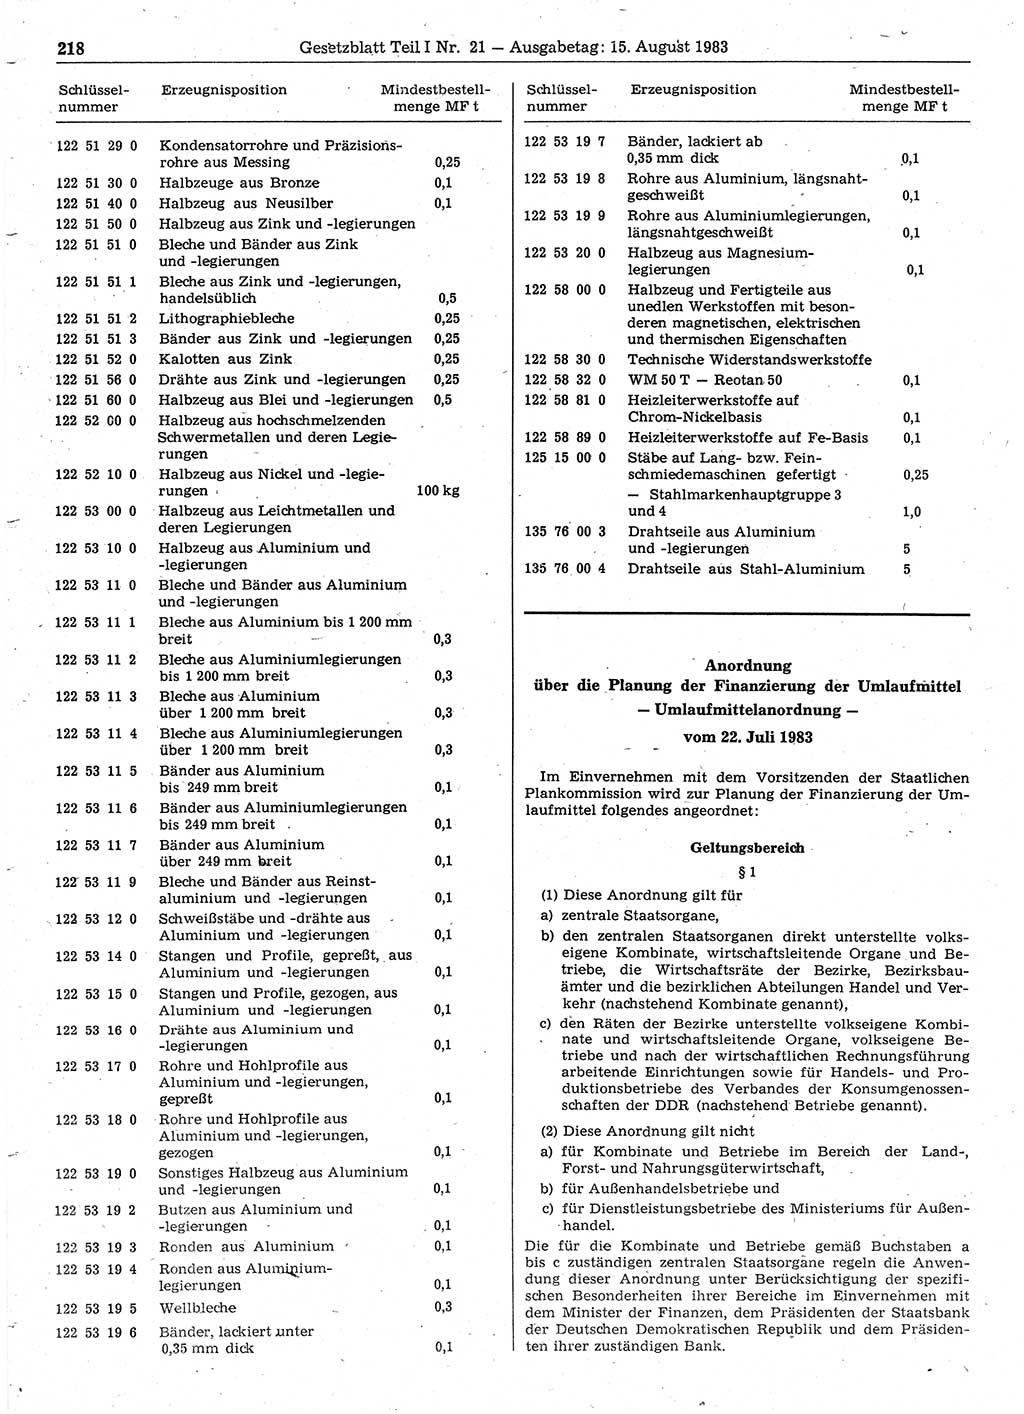 Gesetzblatt (GBl.) der Deutschen Demokratischen Republik (DDR) Teil Ⅰ 1983, Seite 218 (GBl. DDR Ⅰ 1983, S. 218)